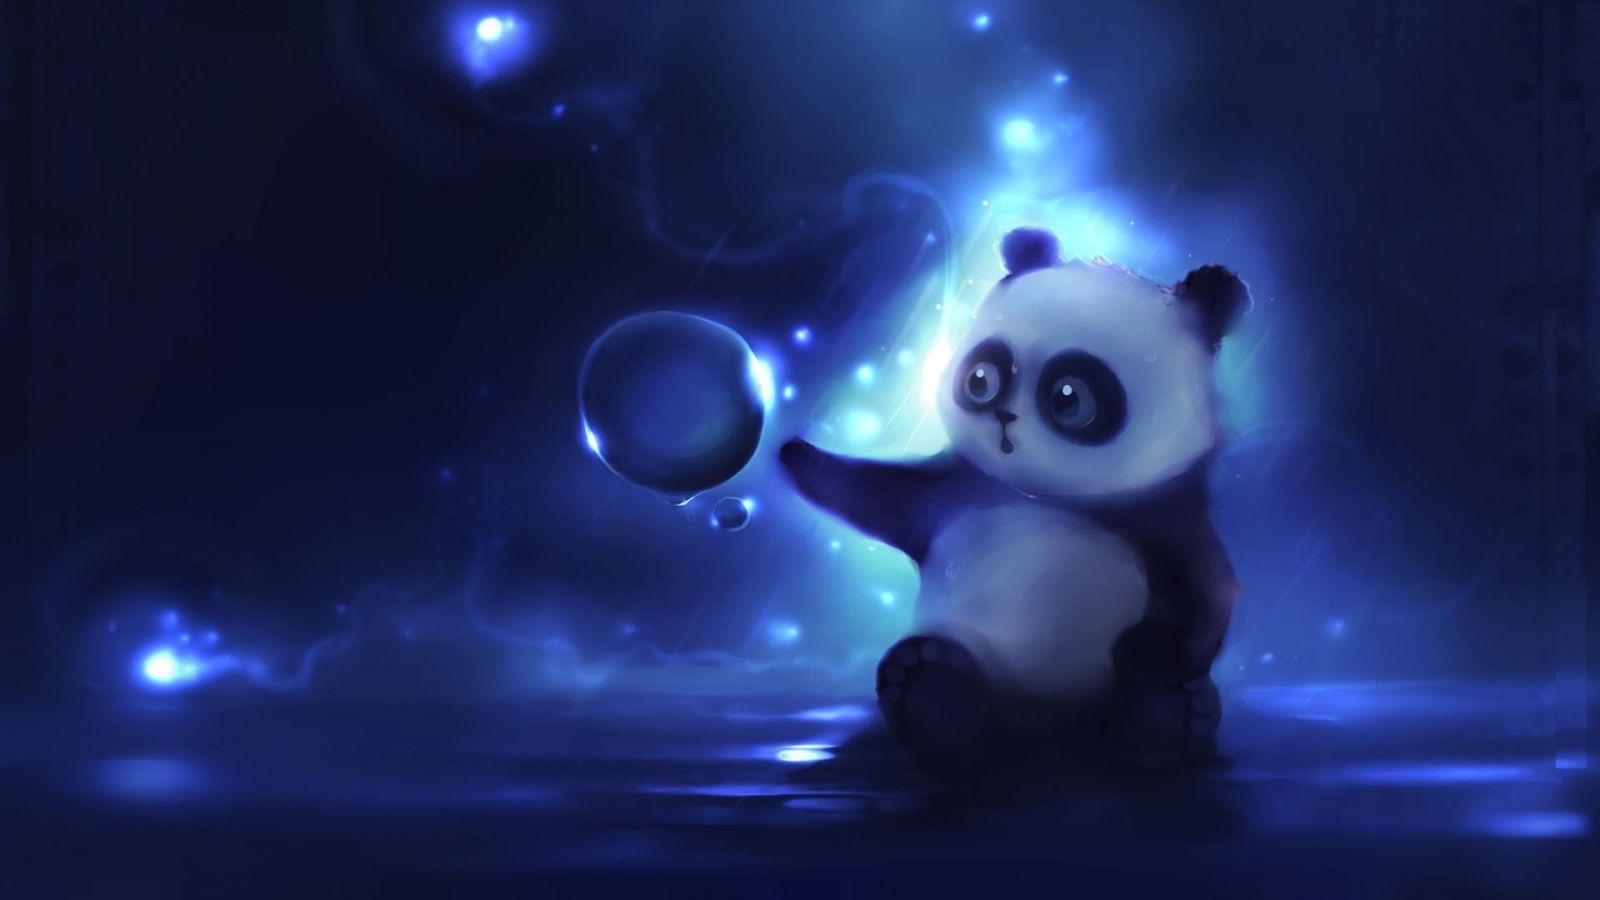 Free download cute animated panda download beautiful animated desktop wallpaper [1920x1080] for your Desktop, Mobile & Tablet. Explore Kawaii Panda Wallpaper. Cute Panda Wallpaper, Cartoon Panda Wallpaper, Panda Bear Wallpaper